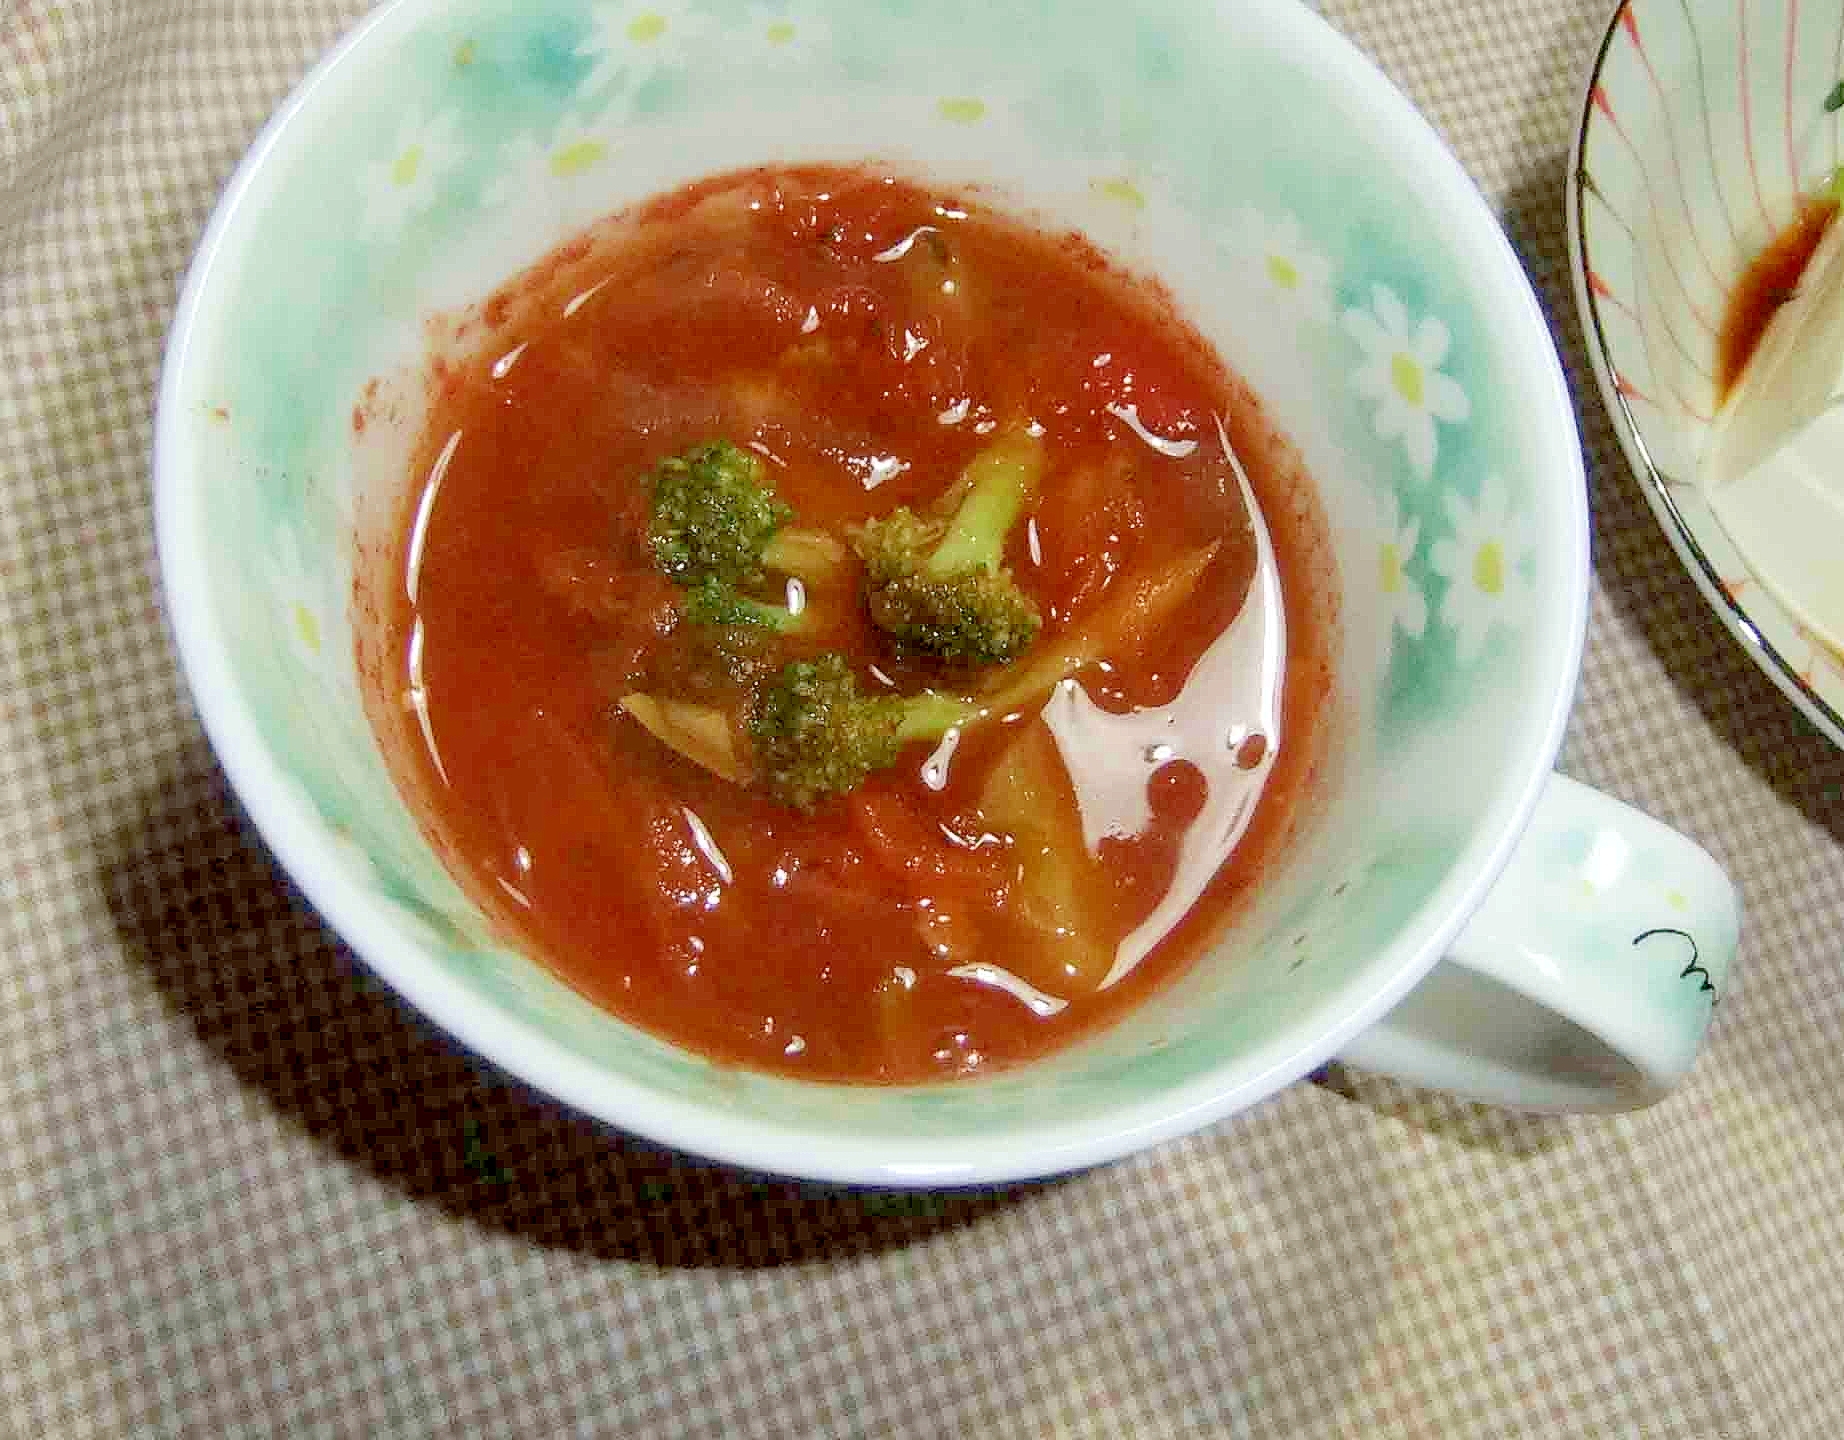 新玉ネギと生姜のトマトスープ